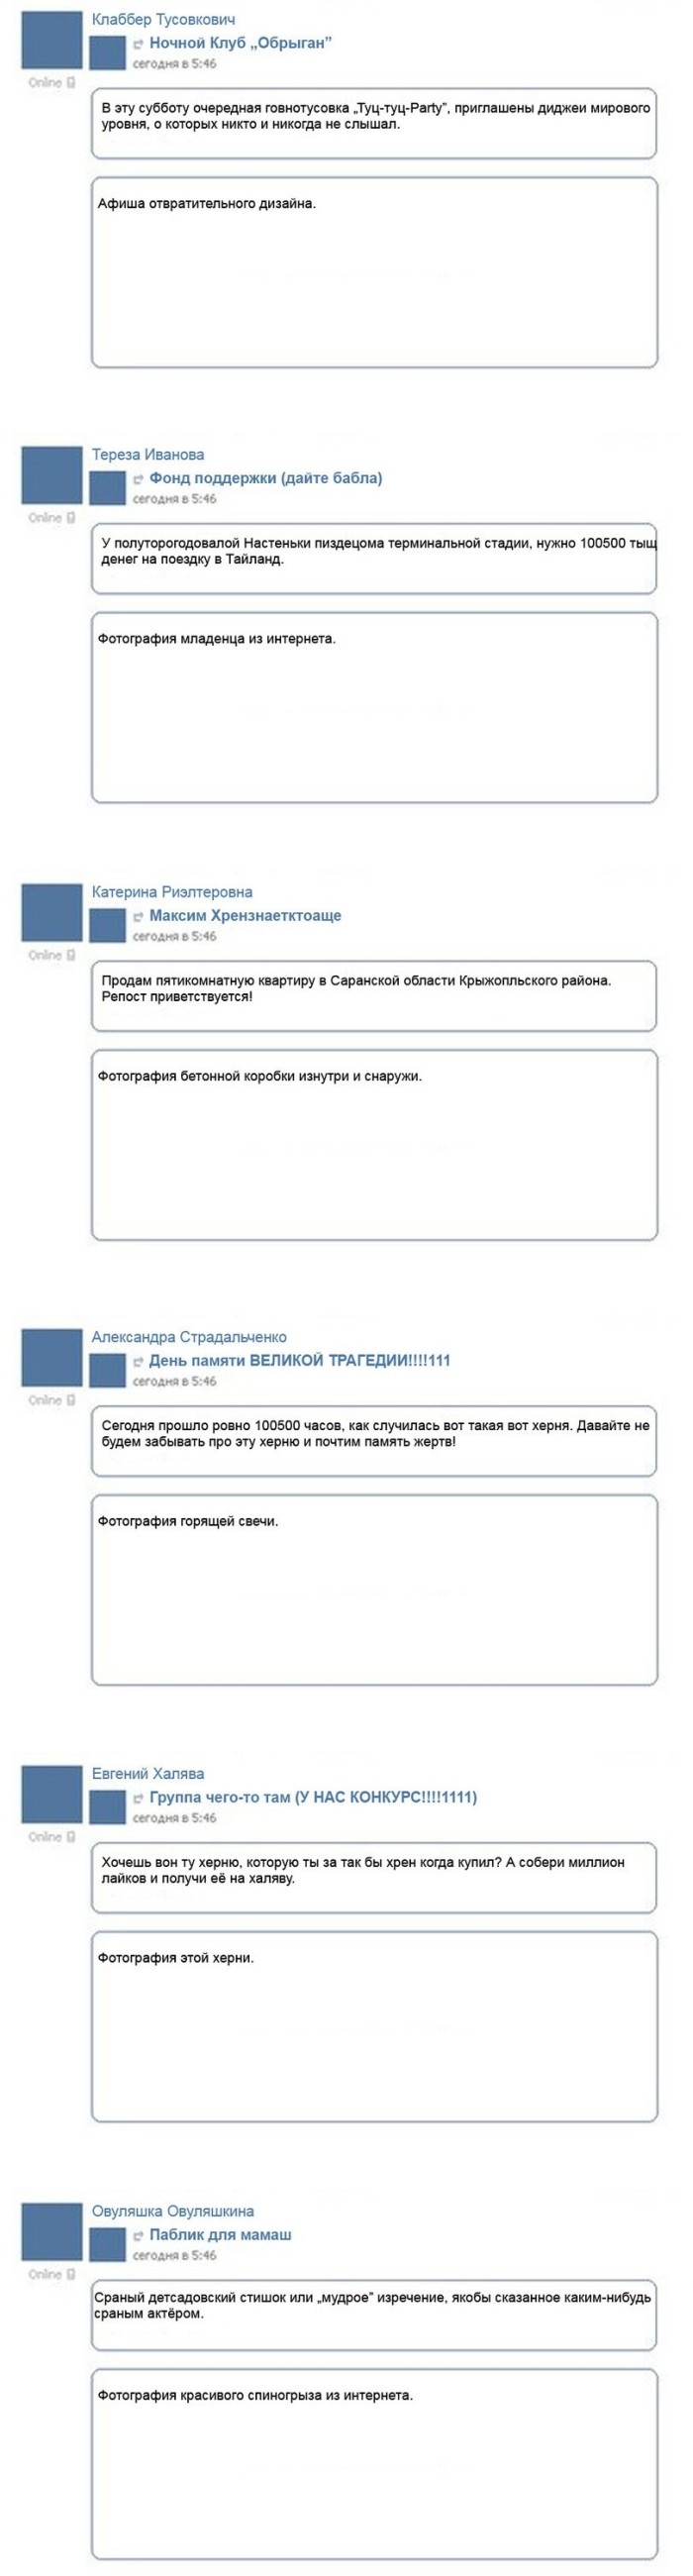 Как добавляют новости ВКонтакте (8 картинок)